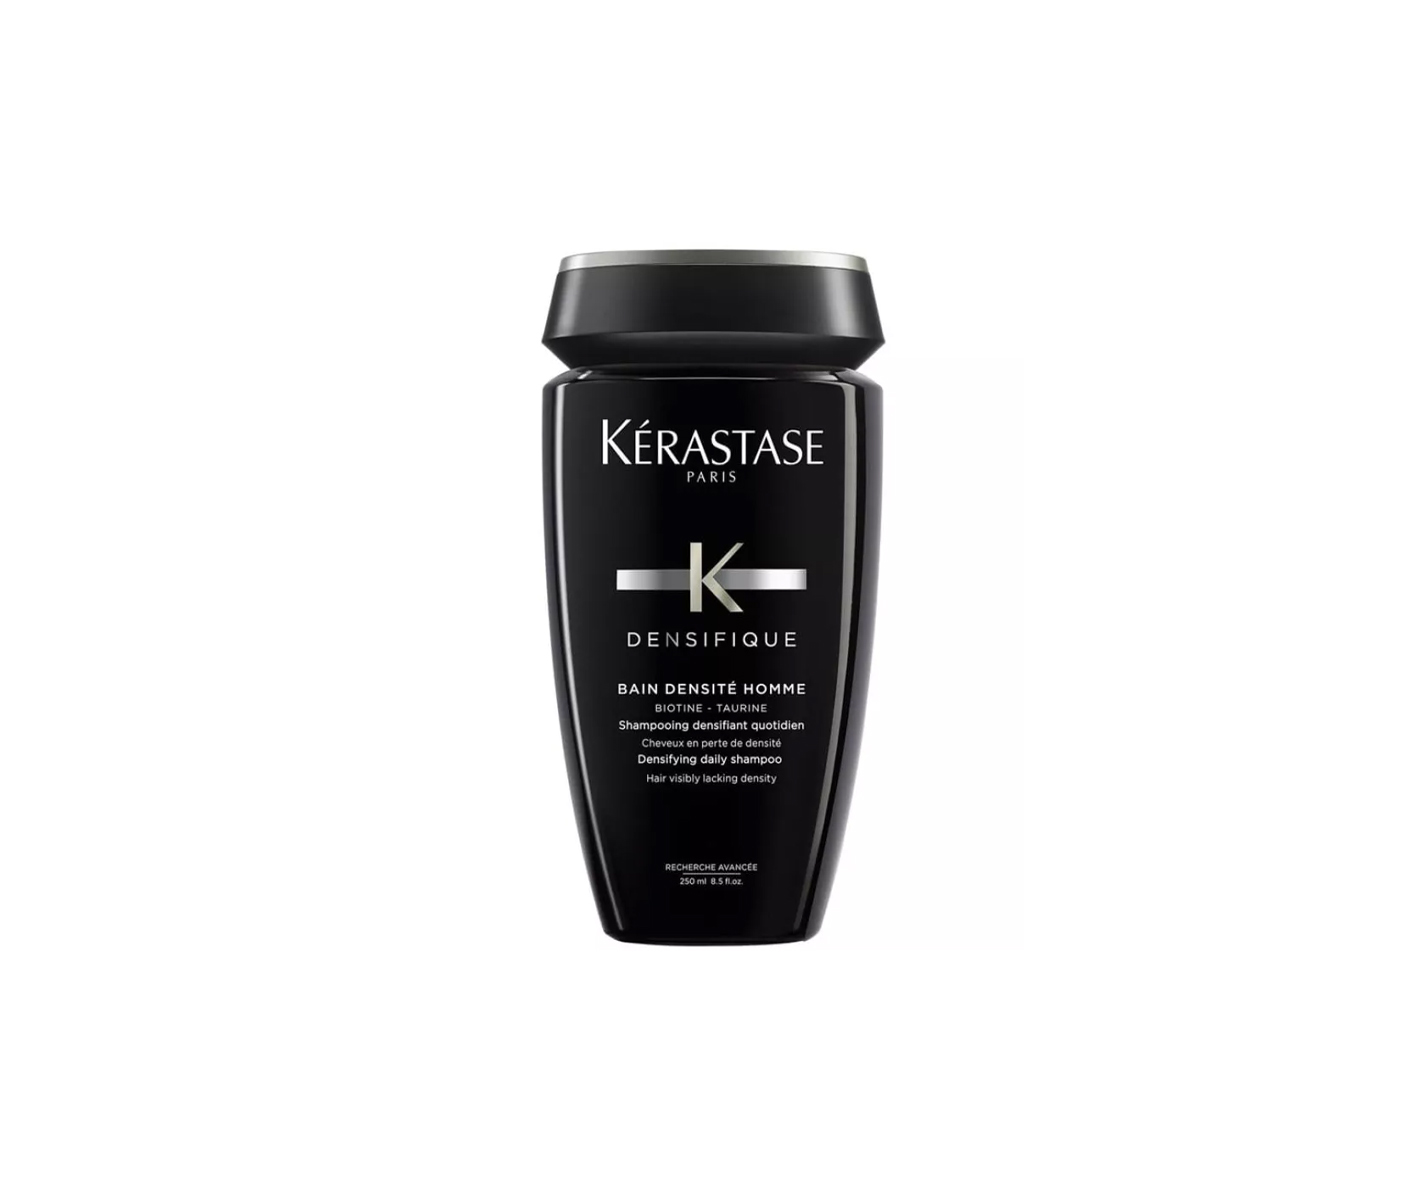 Kerastase, Densifique HOMME biotine + taurine, shampoo for men